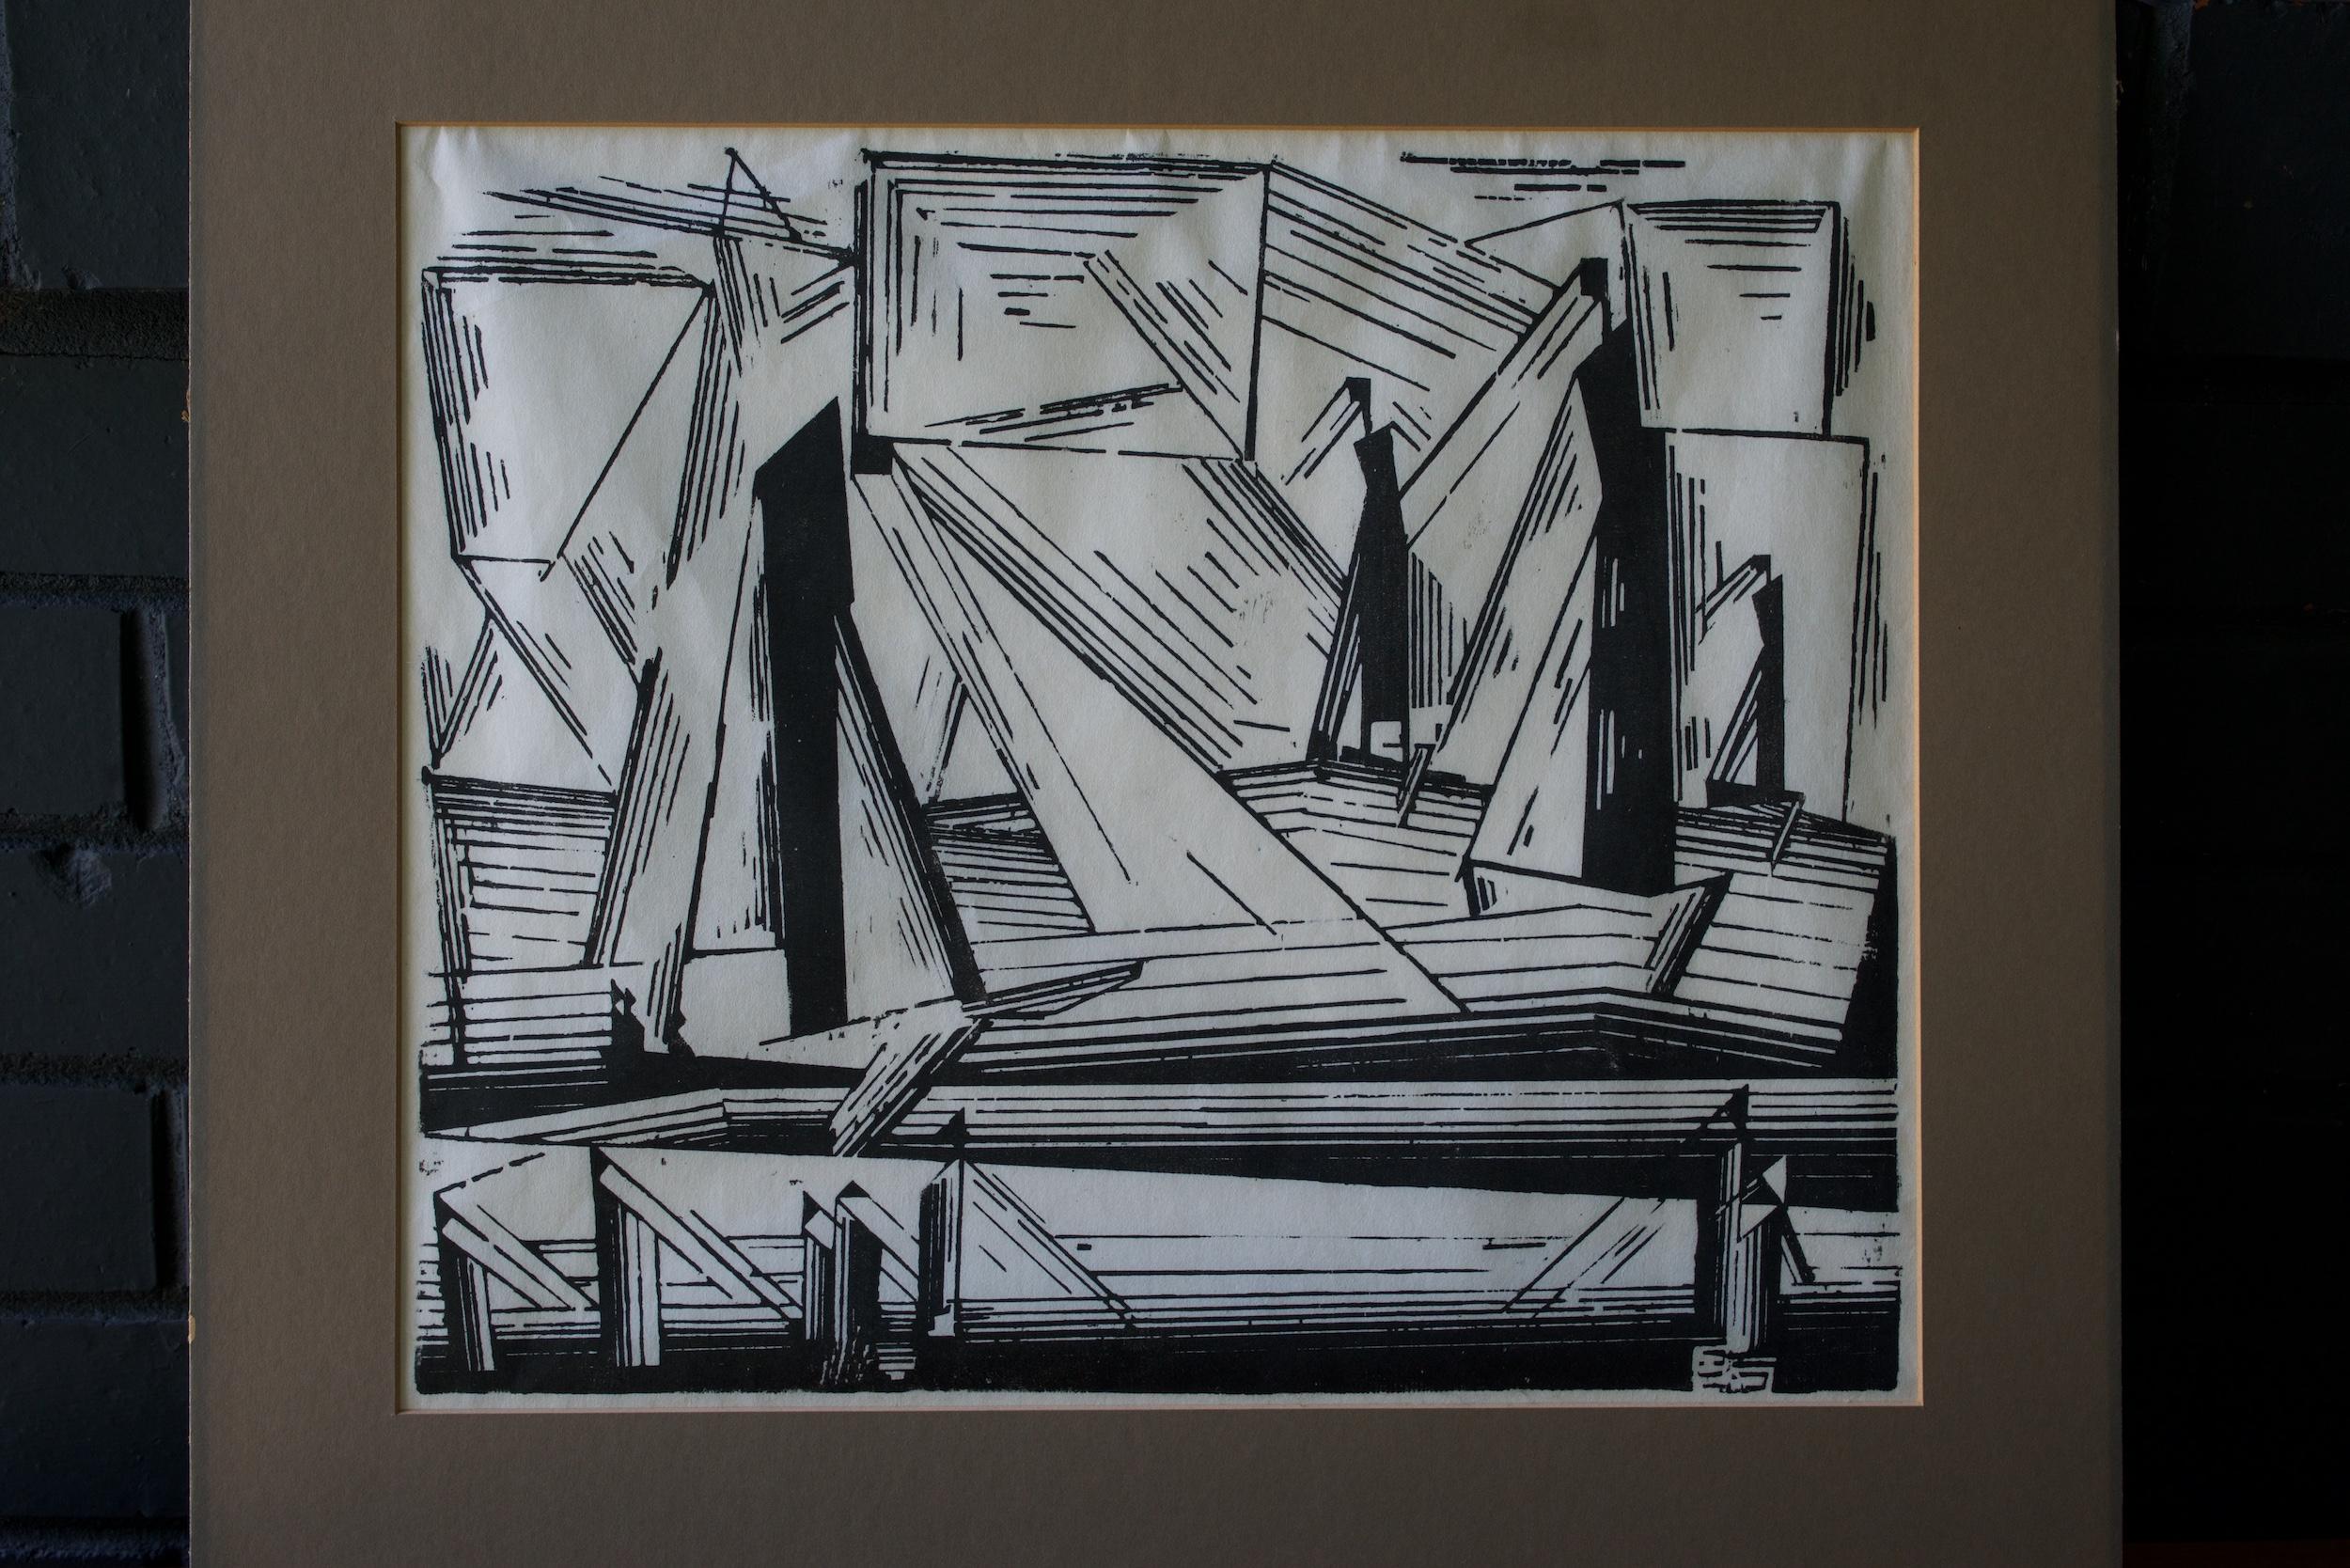 Pressé Impression cubiste abstraite urbaine et futuriste des années 1920 de Lyonel Feininger:: gravure sur bois Art déco - Vue urbaine en vente